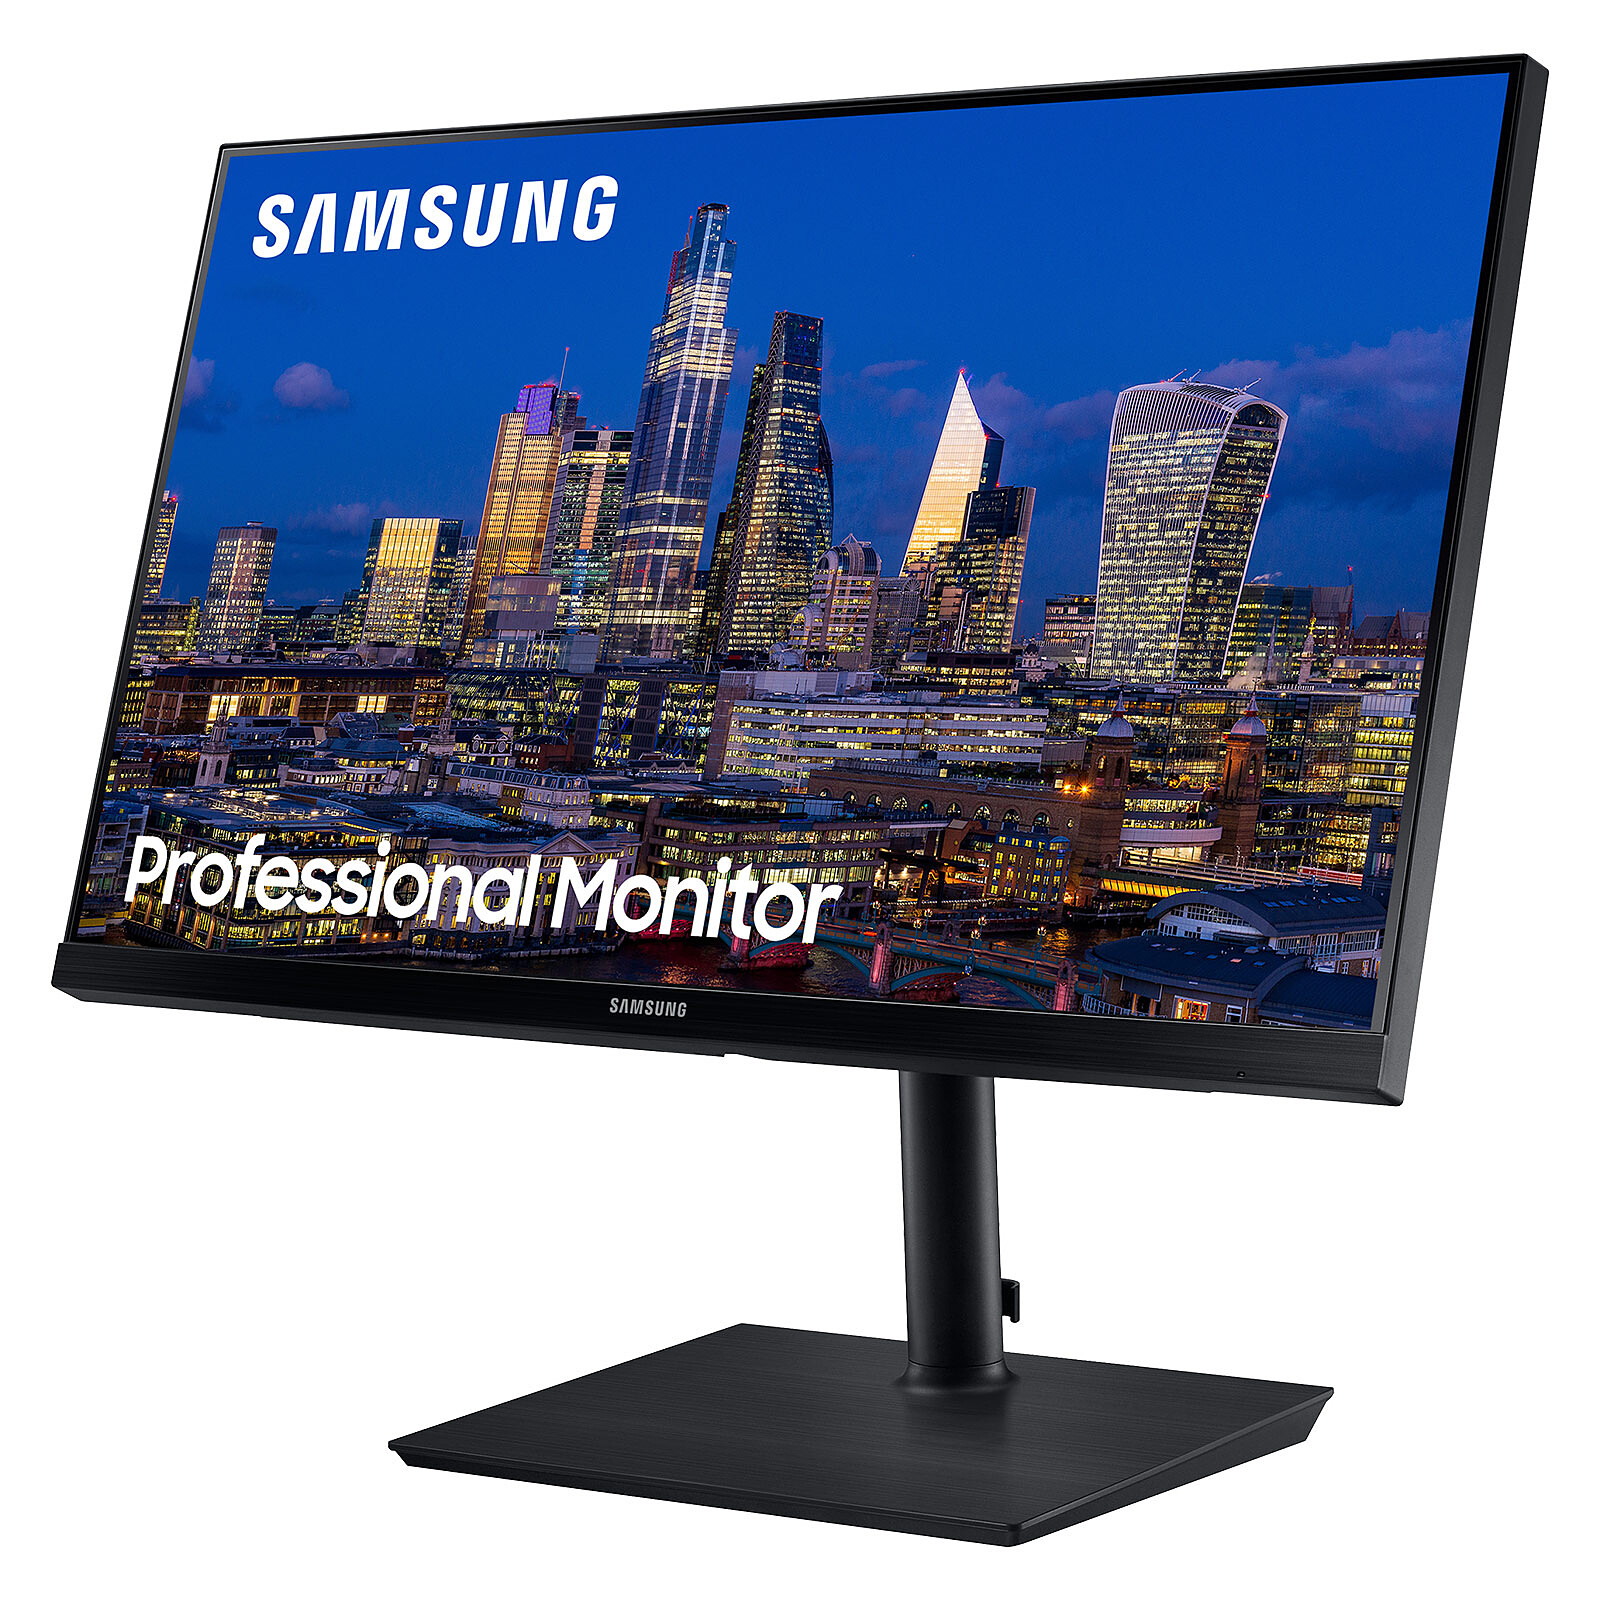 Diseño elegante con bordes finos, pantalla Full HD de 27 pulgadas Samsung